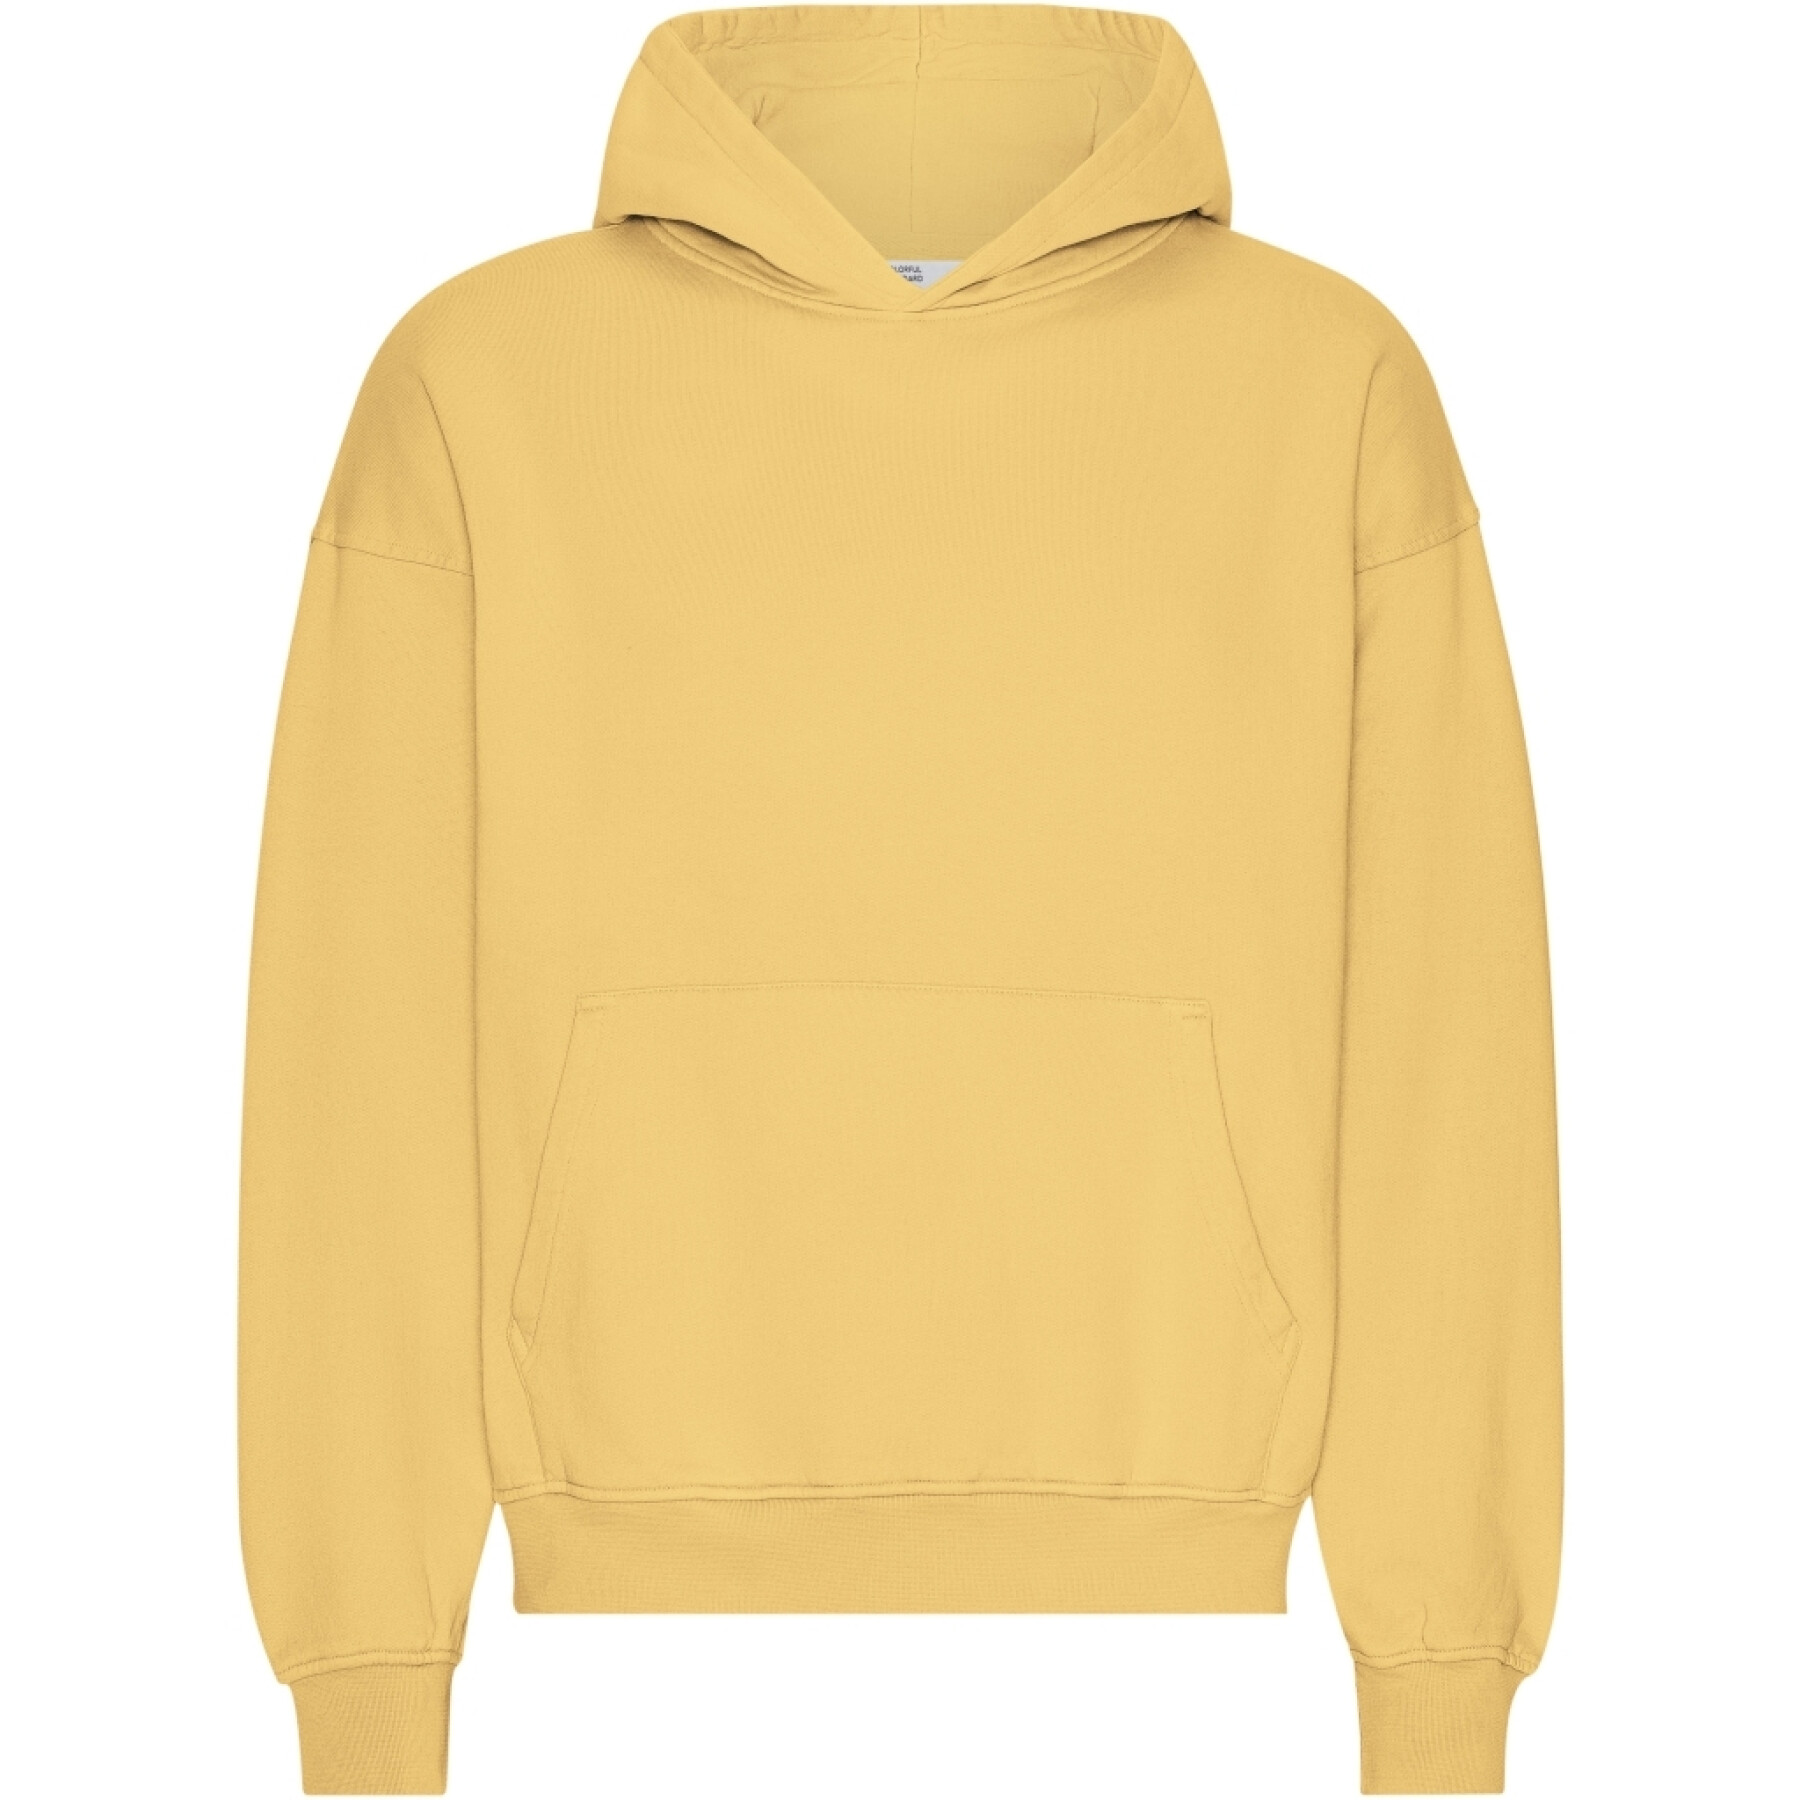 Oversized sweatshirt met capuchon Colorful Standard Organic Lemon Yellow